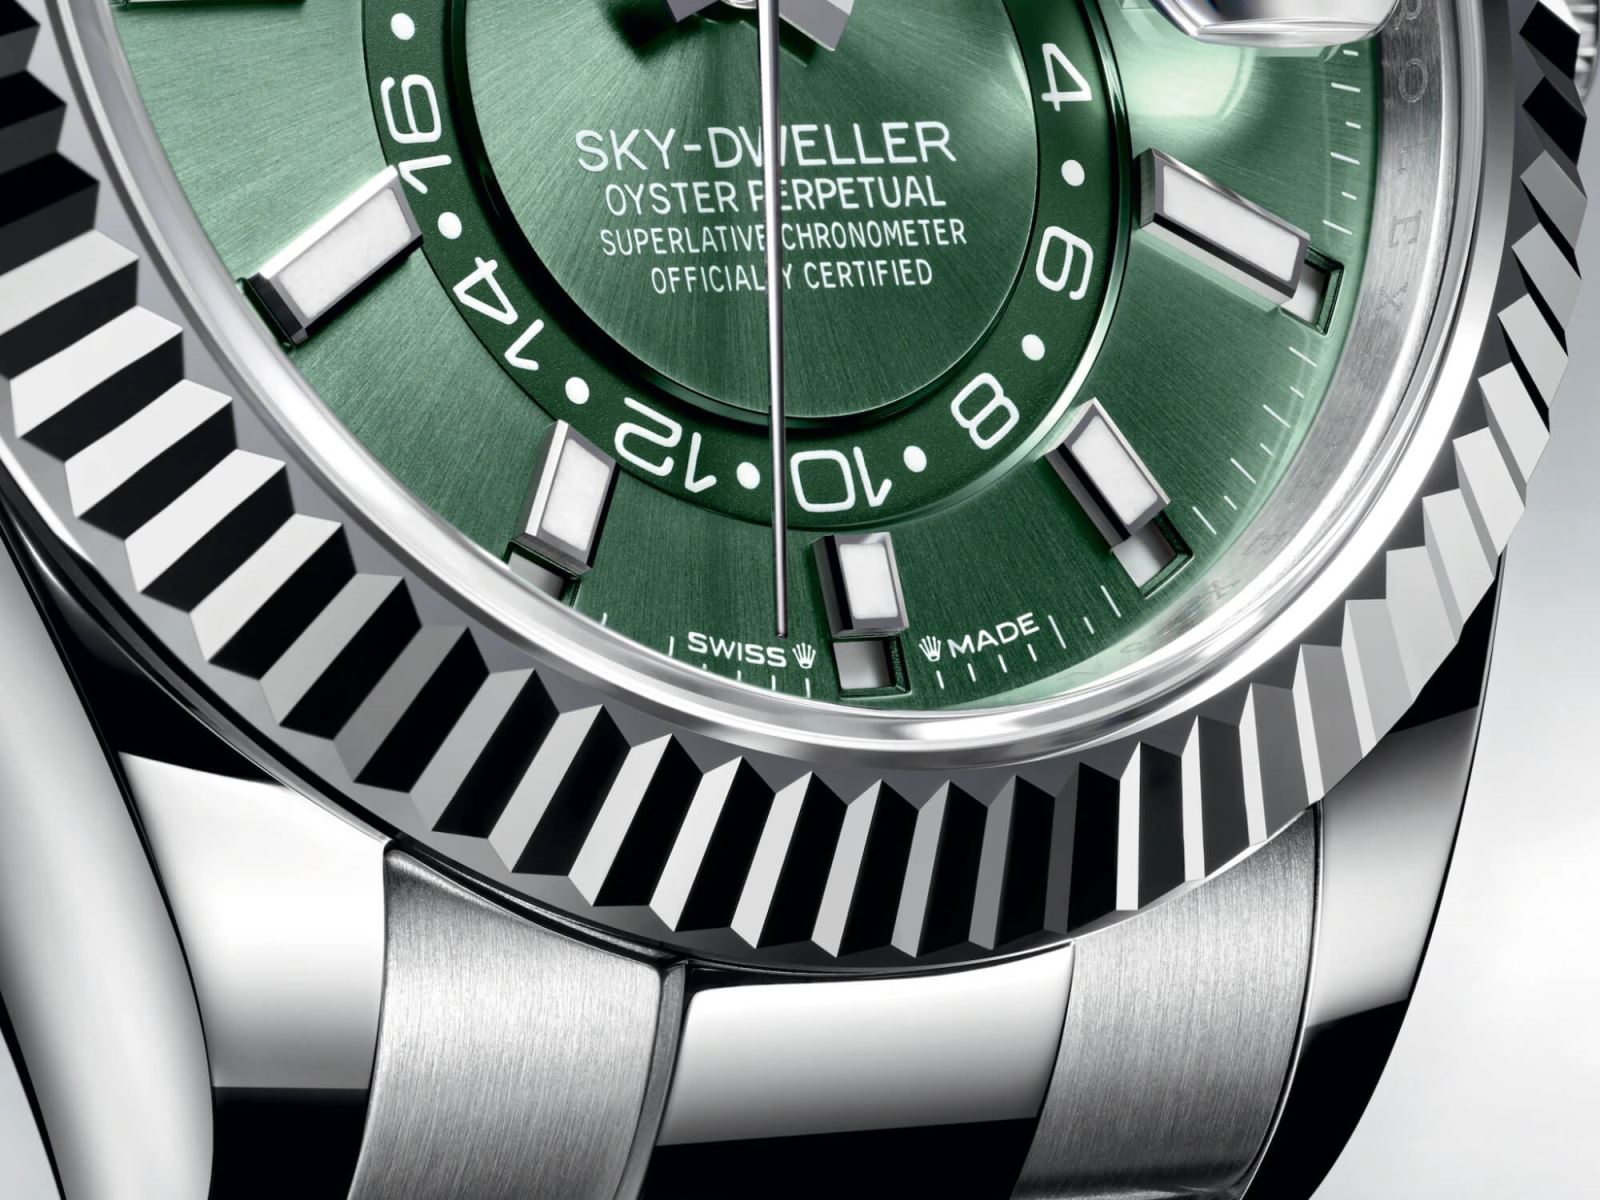 Rolex phát hành ba mẫu đồng hồ Sky-Dweller mới với các chuyển động được cập nhật